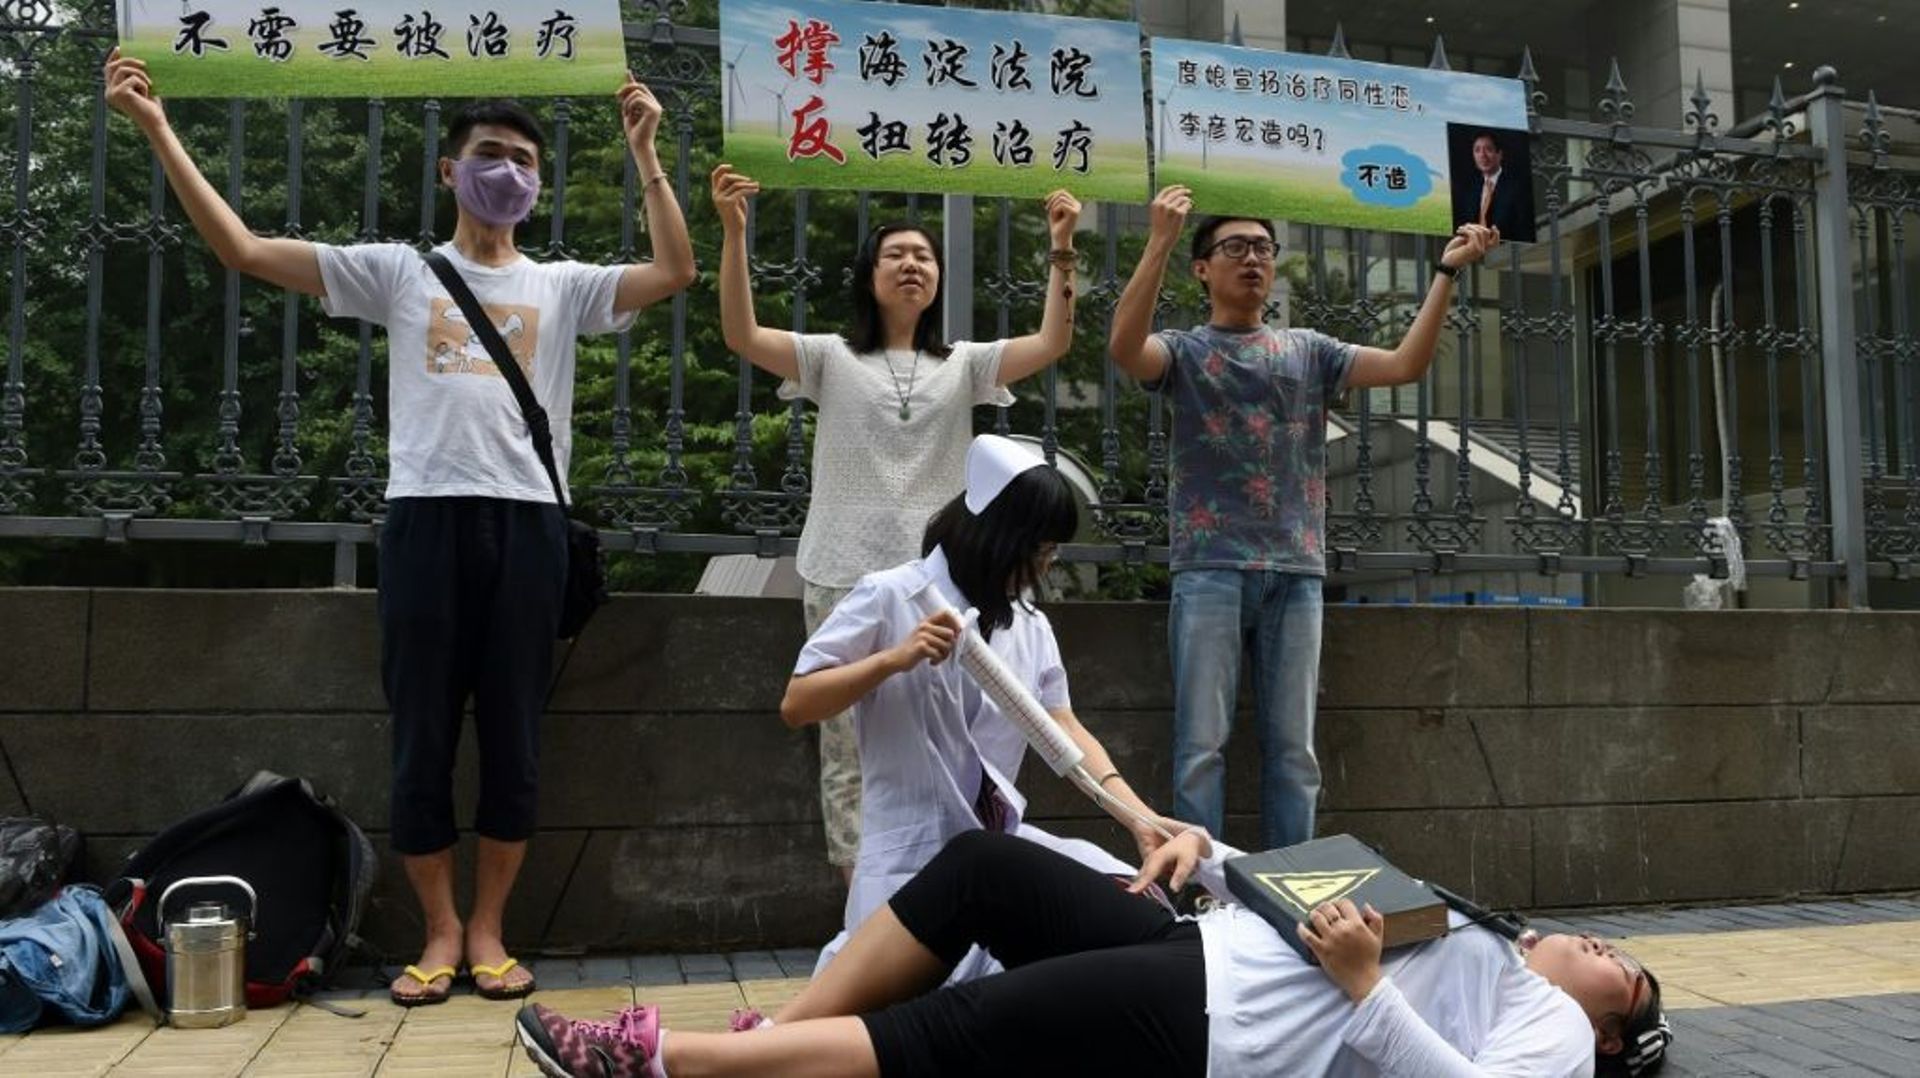 Des militants du centre LGBT de Pékin miment l'injection d'un patient à l'aide d'une seringue géante pour dénoncer les "cures" contre l'homosexualité pratiquées en Chine, le 31 juillet 2014 à Pékin